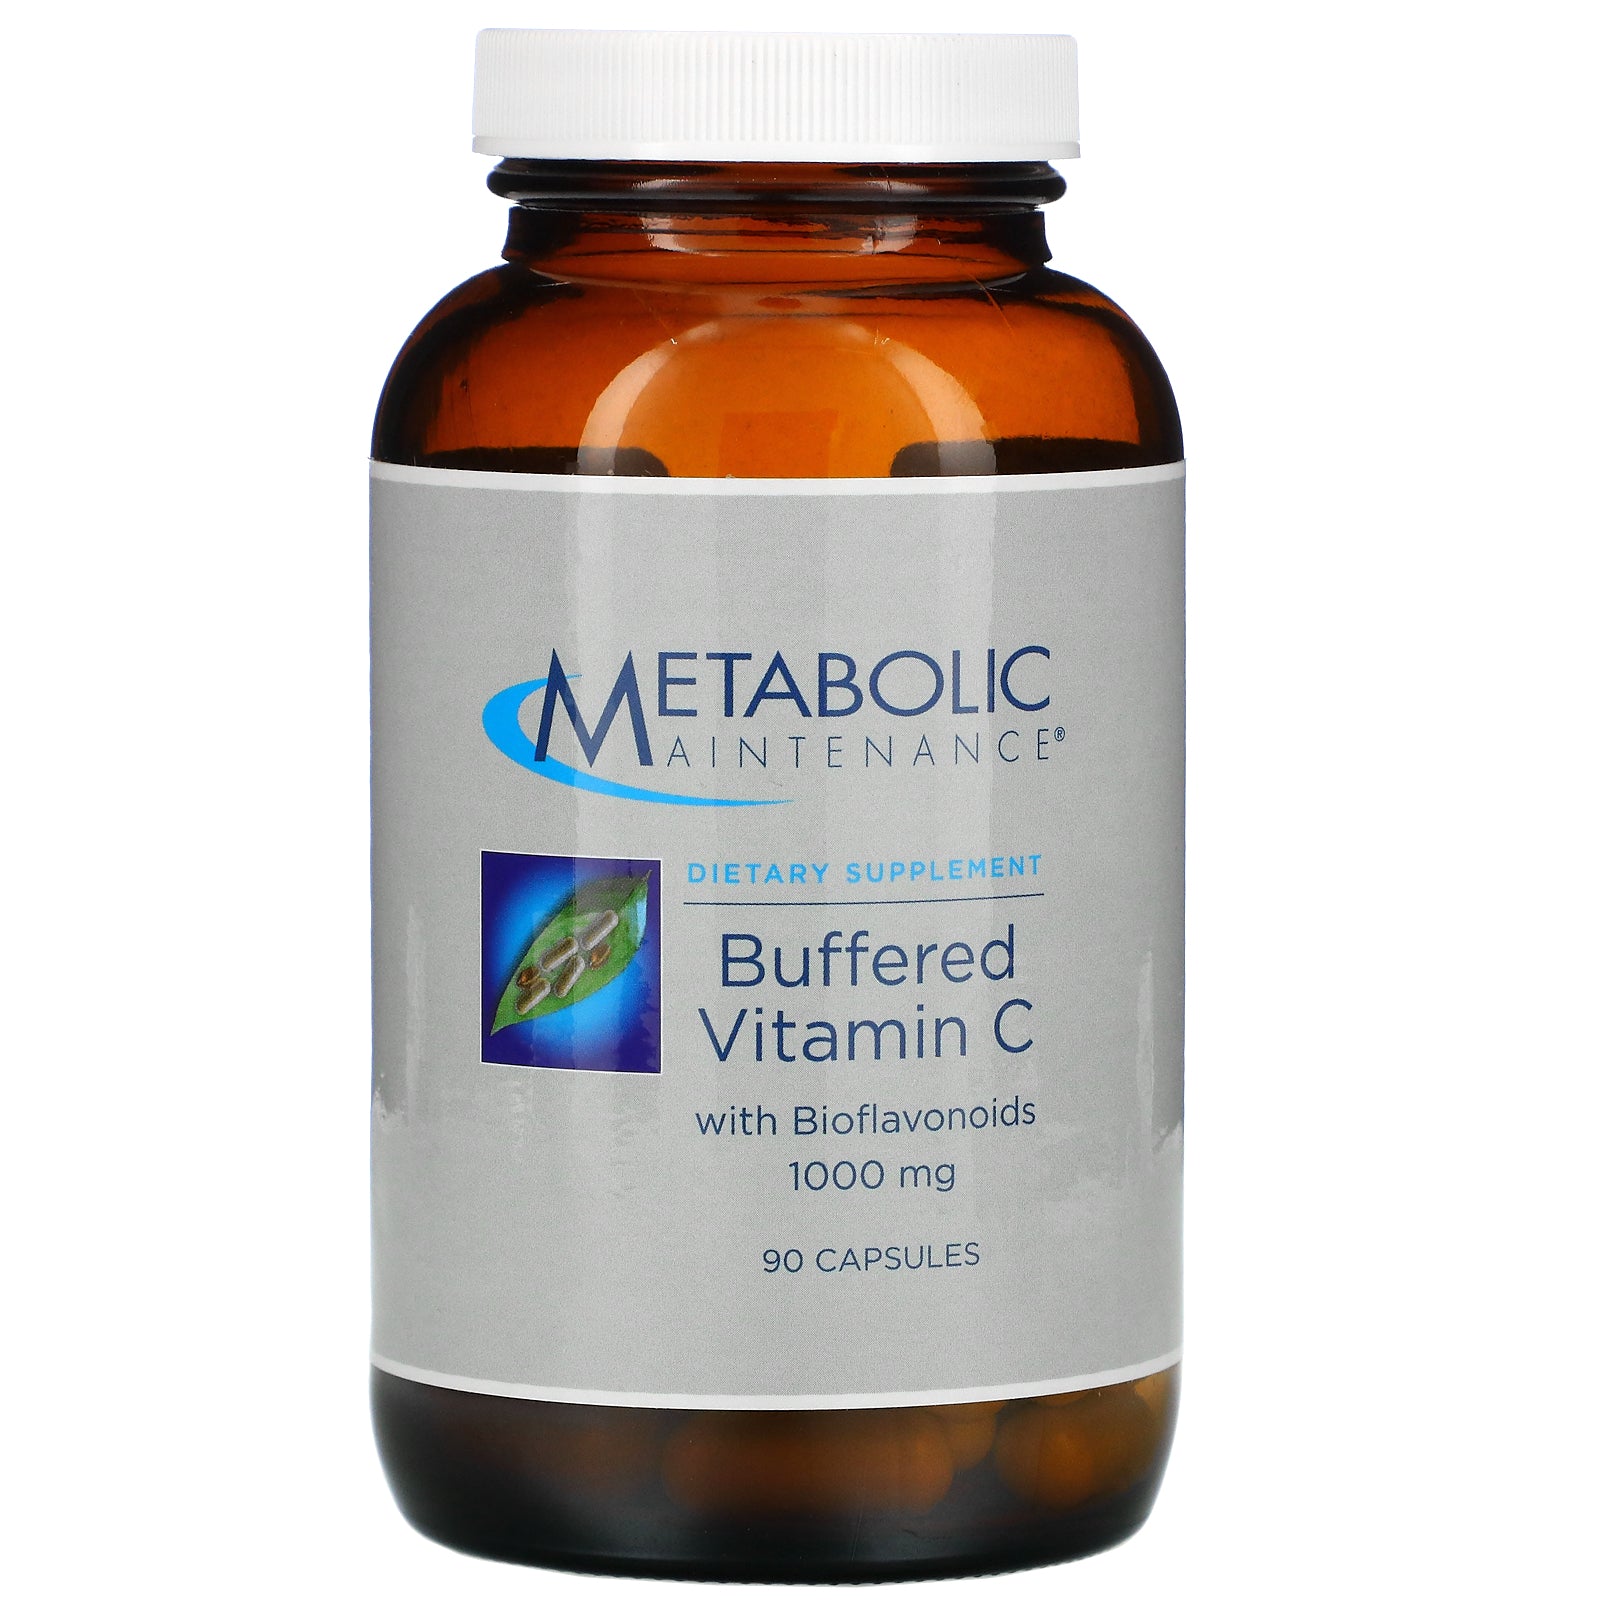 Metabolic Maintenance, Buffered Vitamin C with Bioflavonoids, 1,000 mg, 90 Capsules